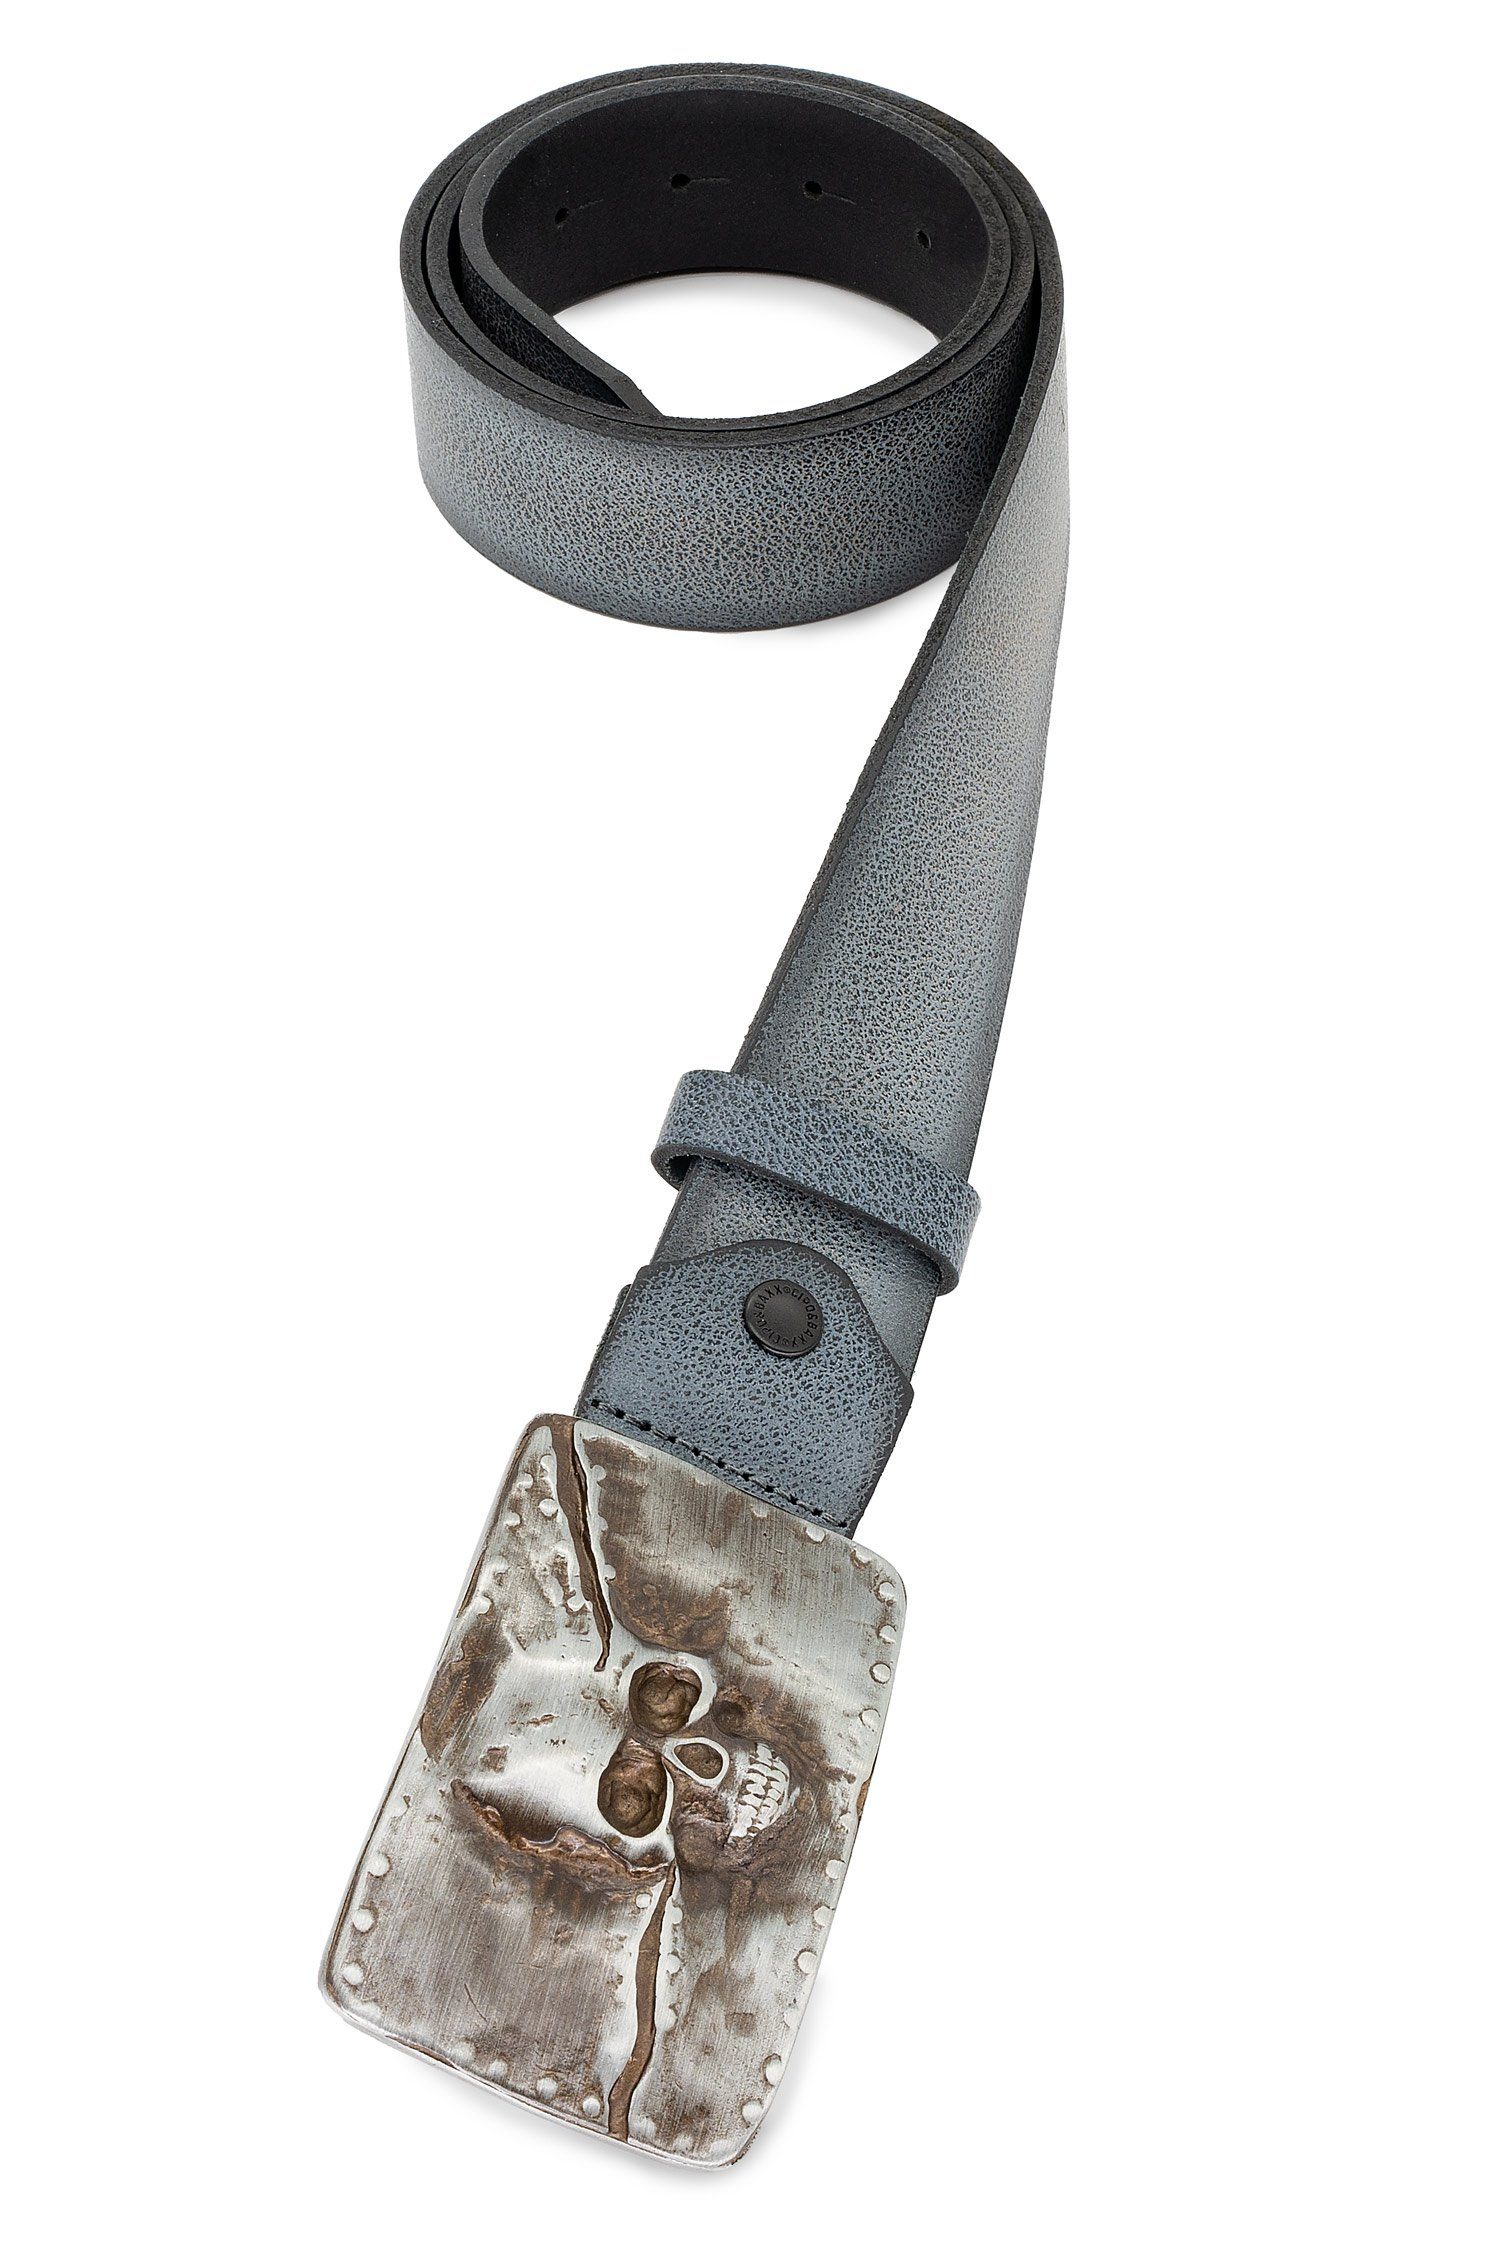 und BA-CG170 Schädel-Motiv & Metall Grau Ledergürtel Patch Schnalle mit Baxx Herren Cipo Gürtel